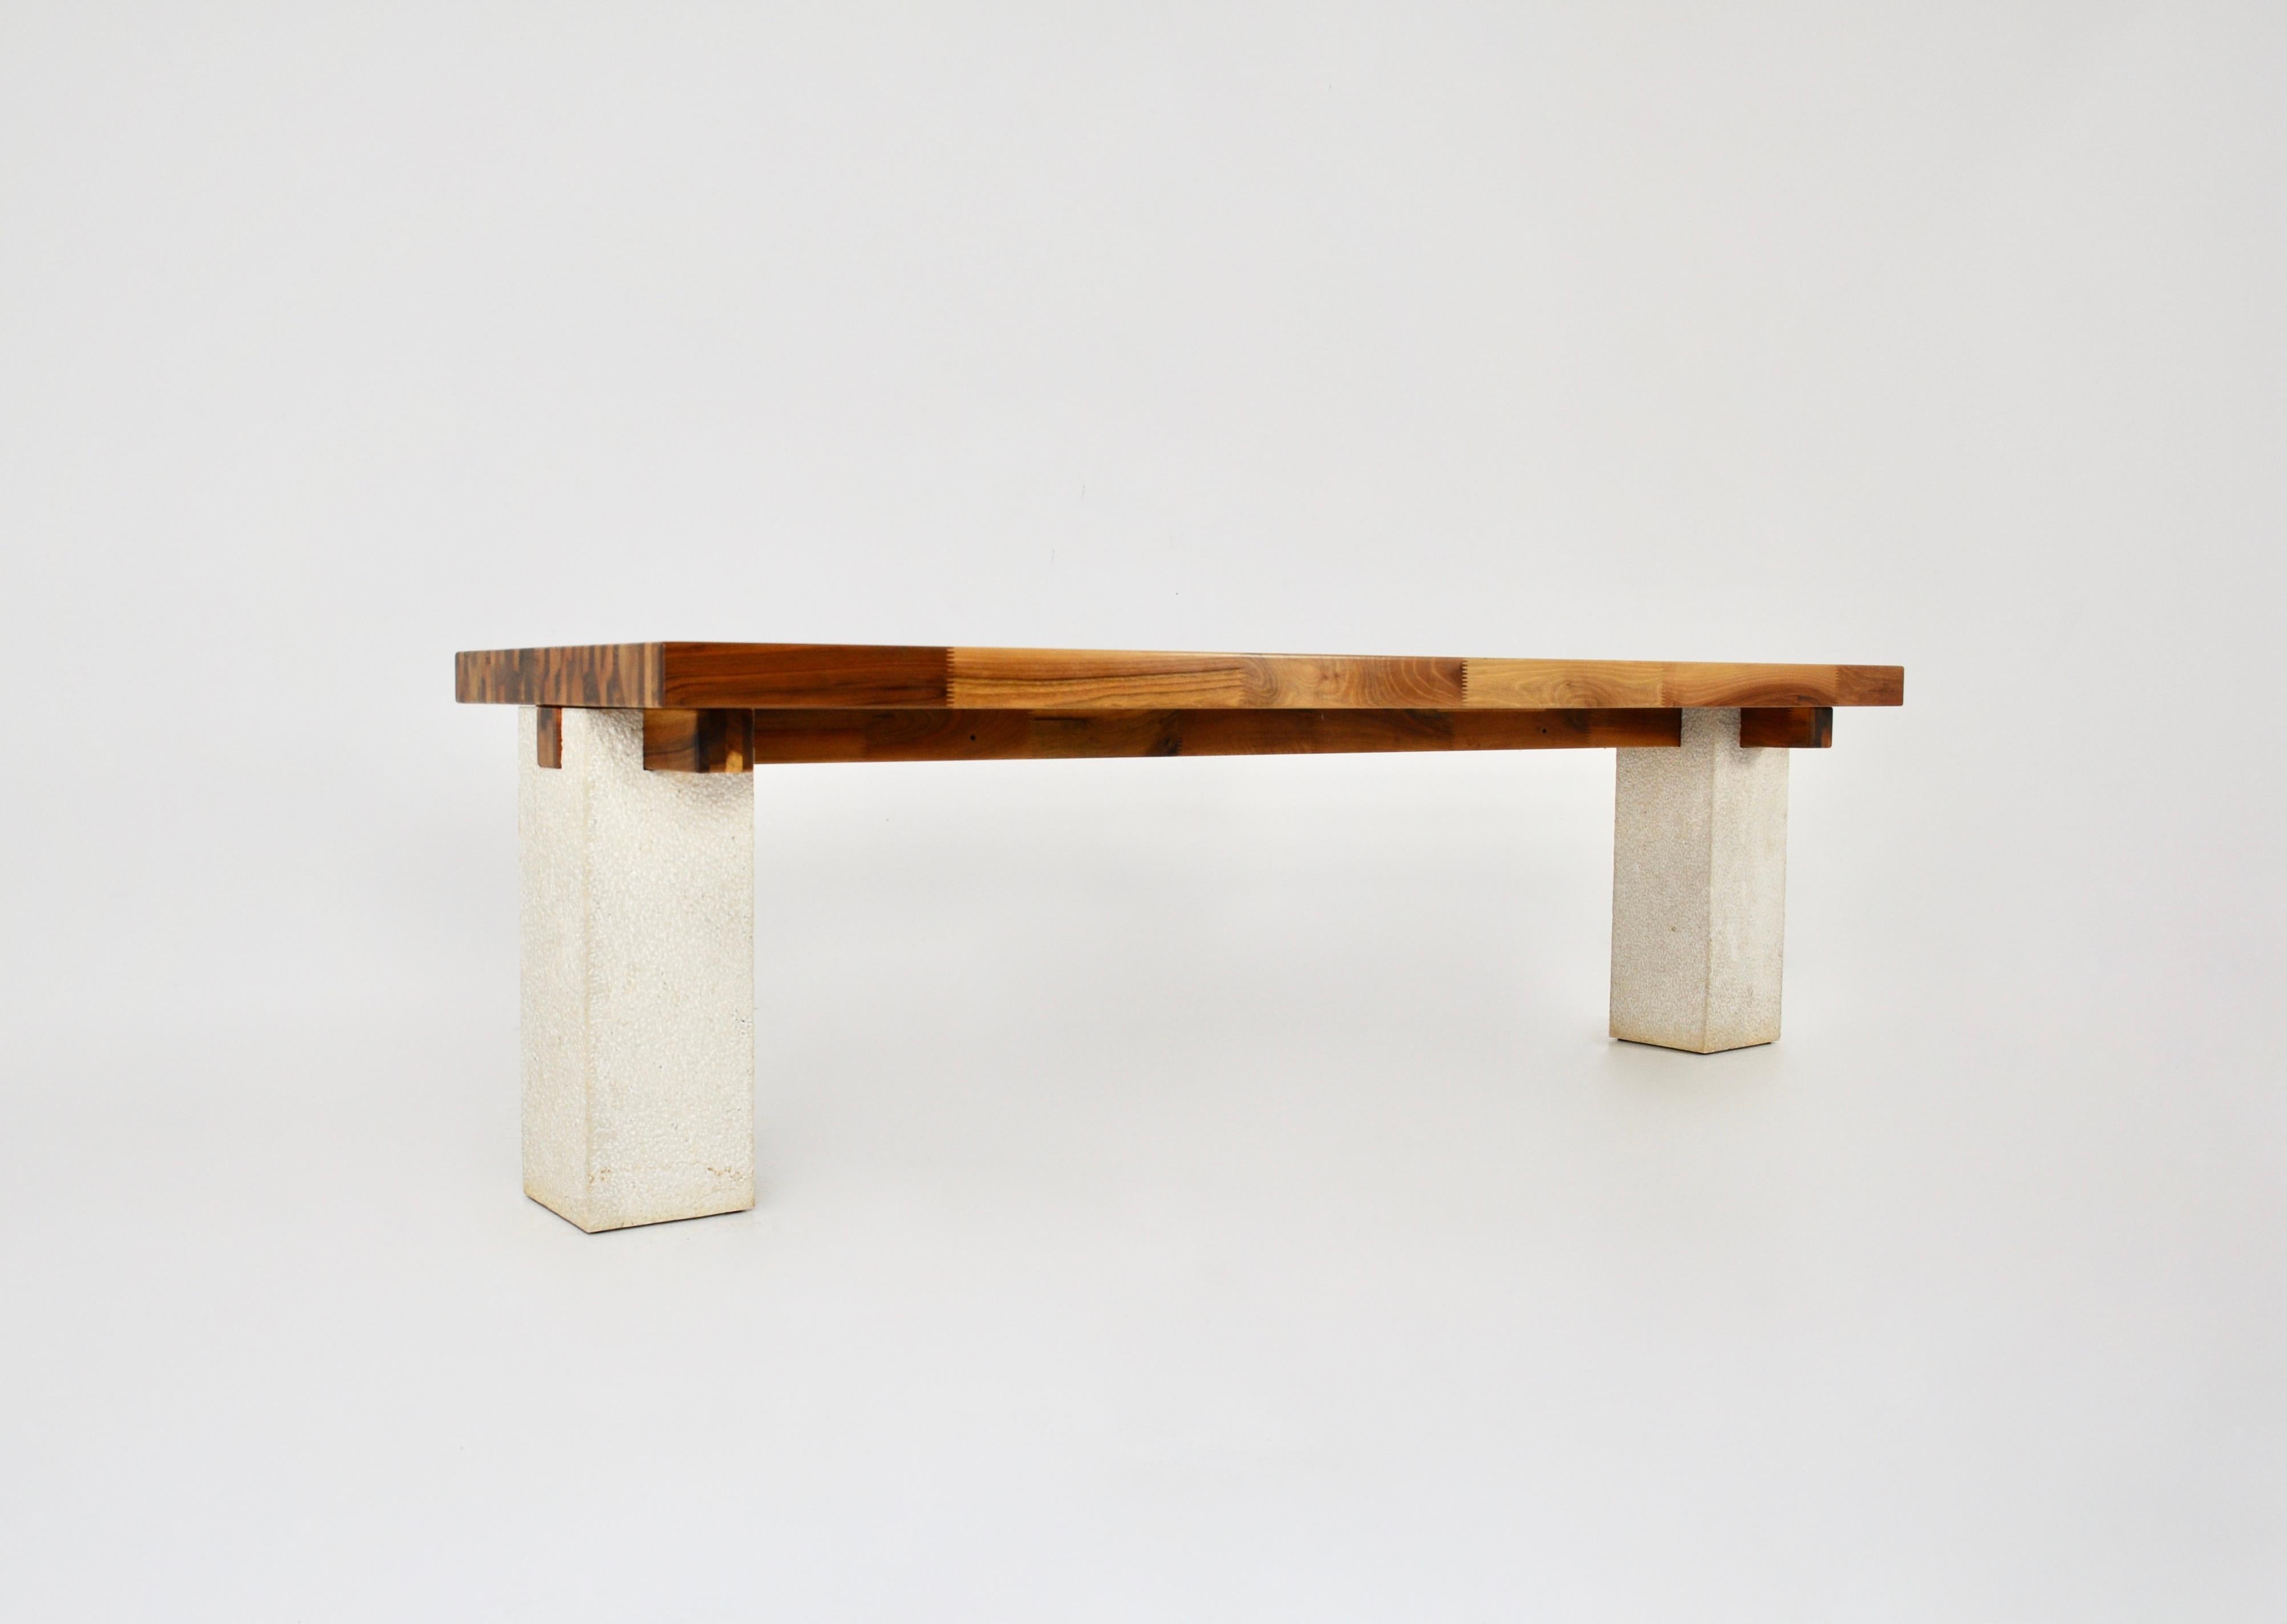 Seltener großer Esstisch von Gio Pomodoro, der in mehreren Exemplaren hergestellt wurde, dieser Tisch ist Nummer 4. Die Platte ist aus Holz, die Mitte und die Beine sind aus Marmor. Unterzeichnet Gio Pomodoro. Abnutzung durch die Zeit und das Alter